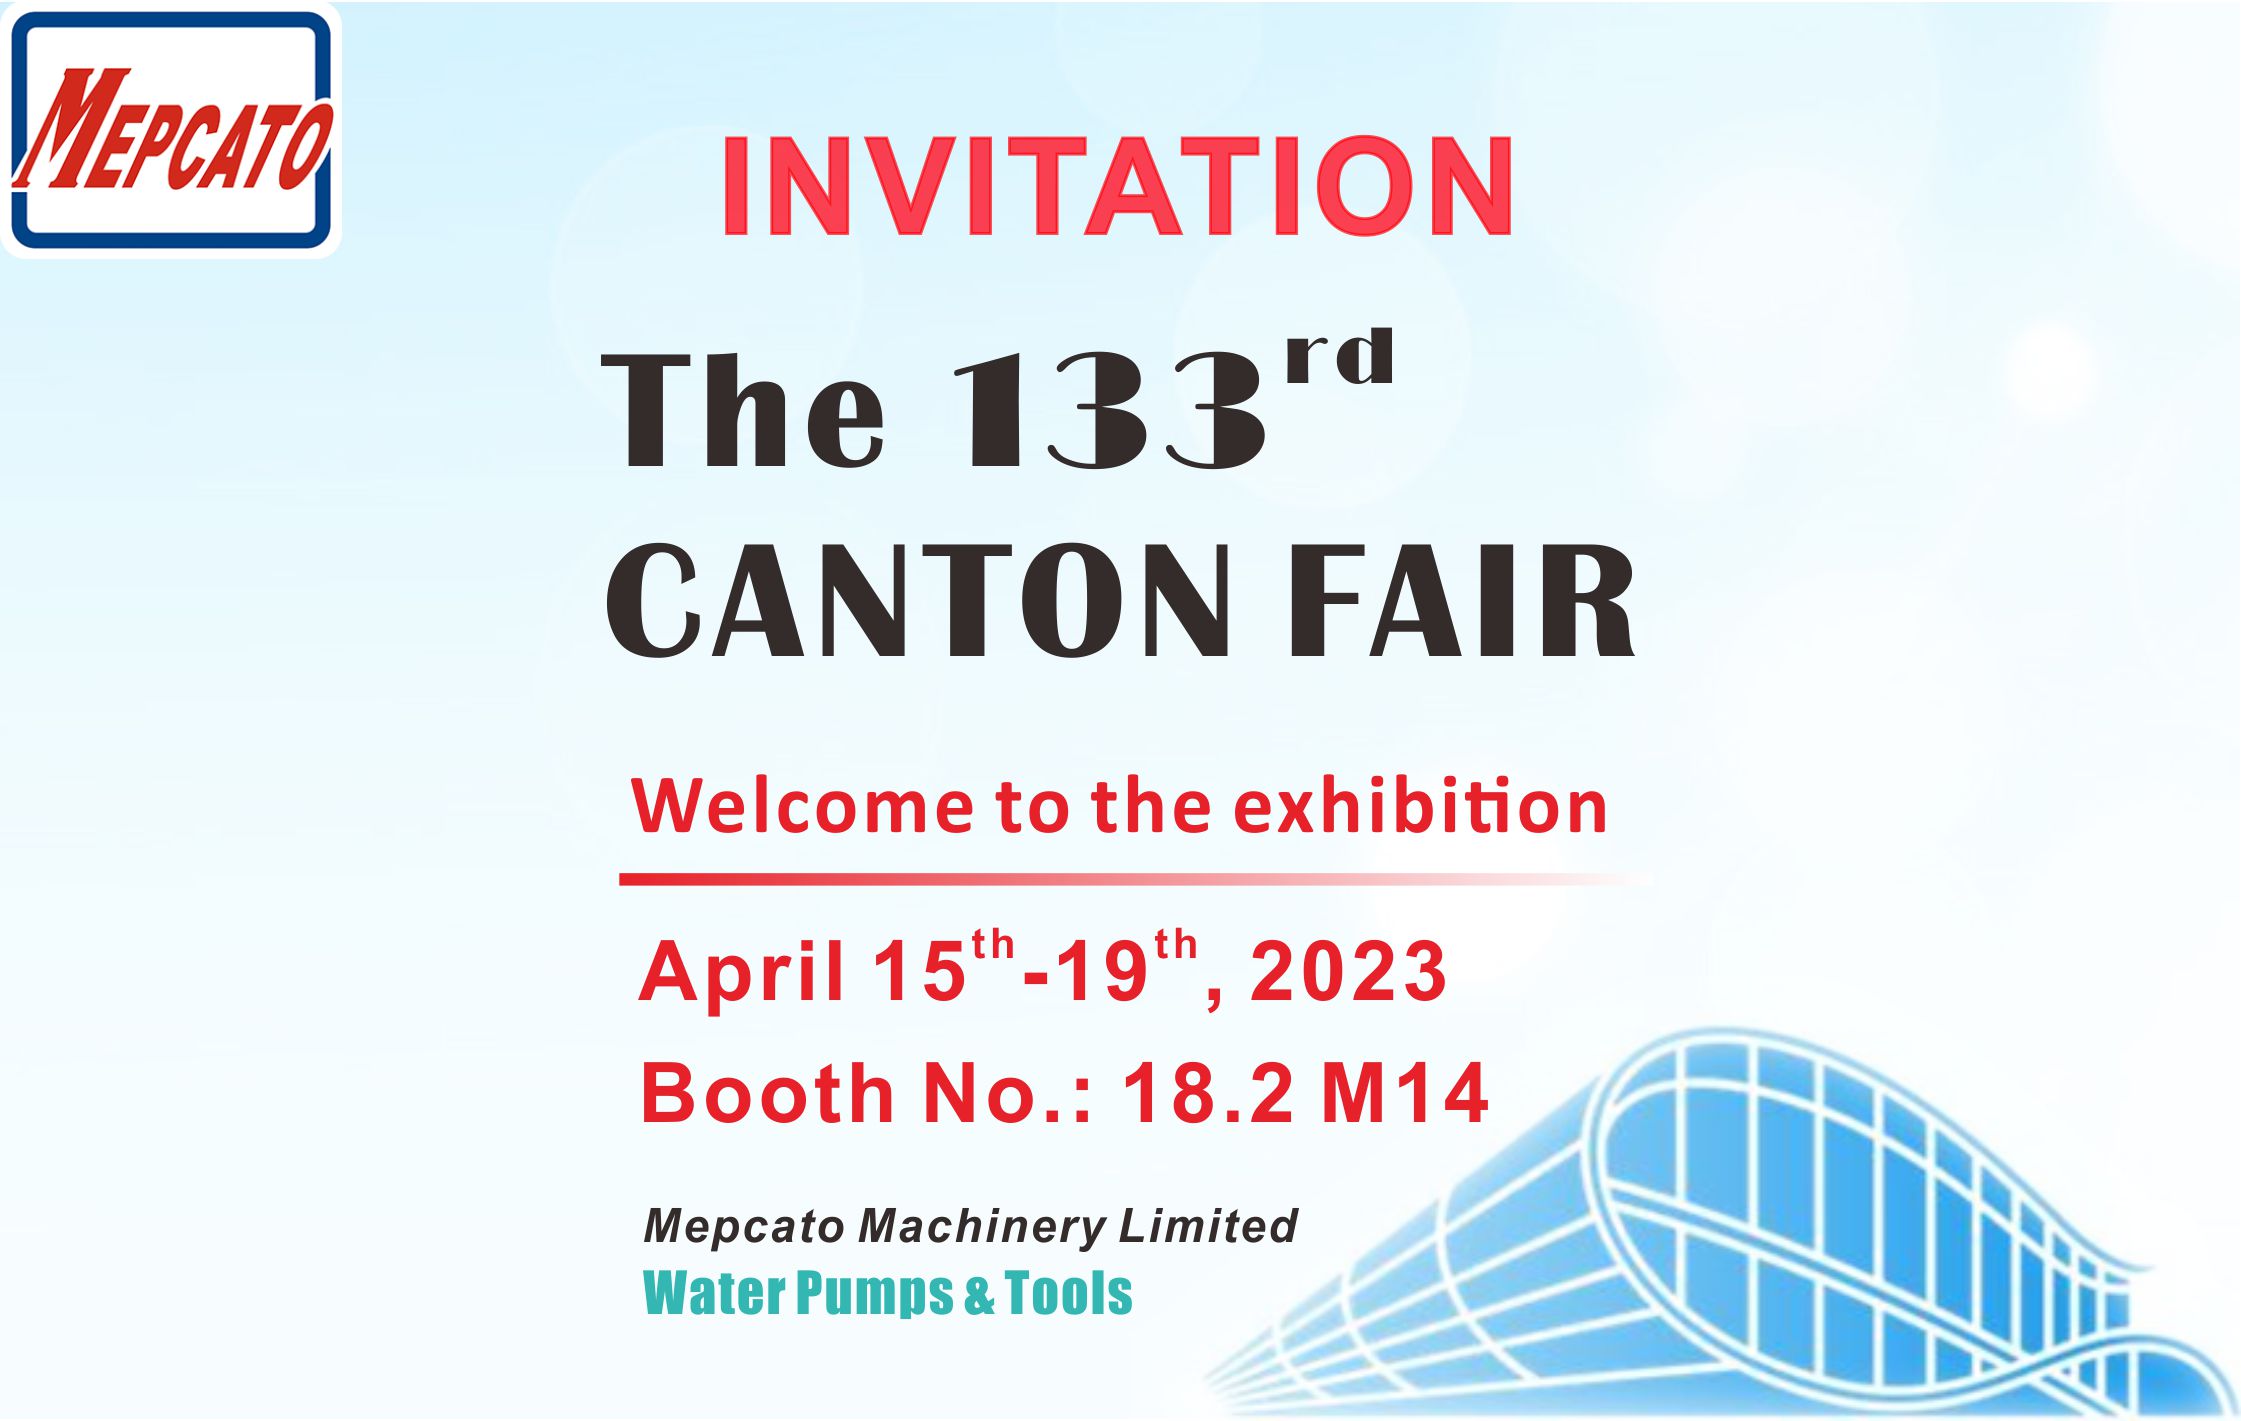 INVITATION for the 133rd Canton Fair